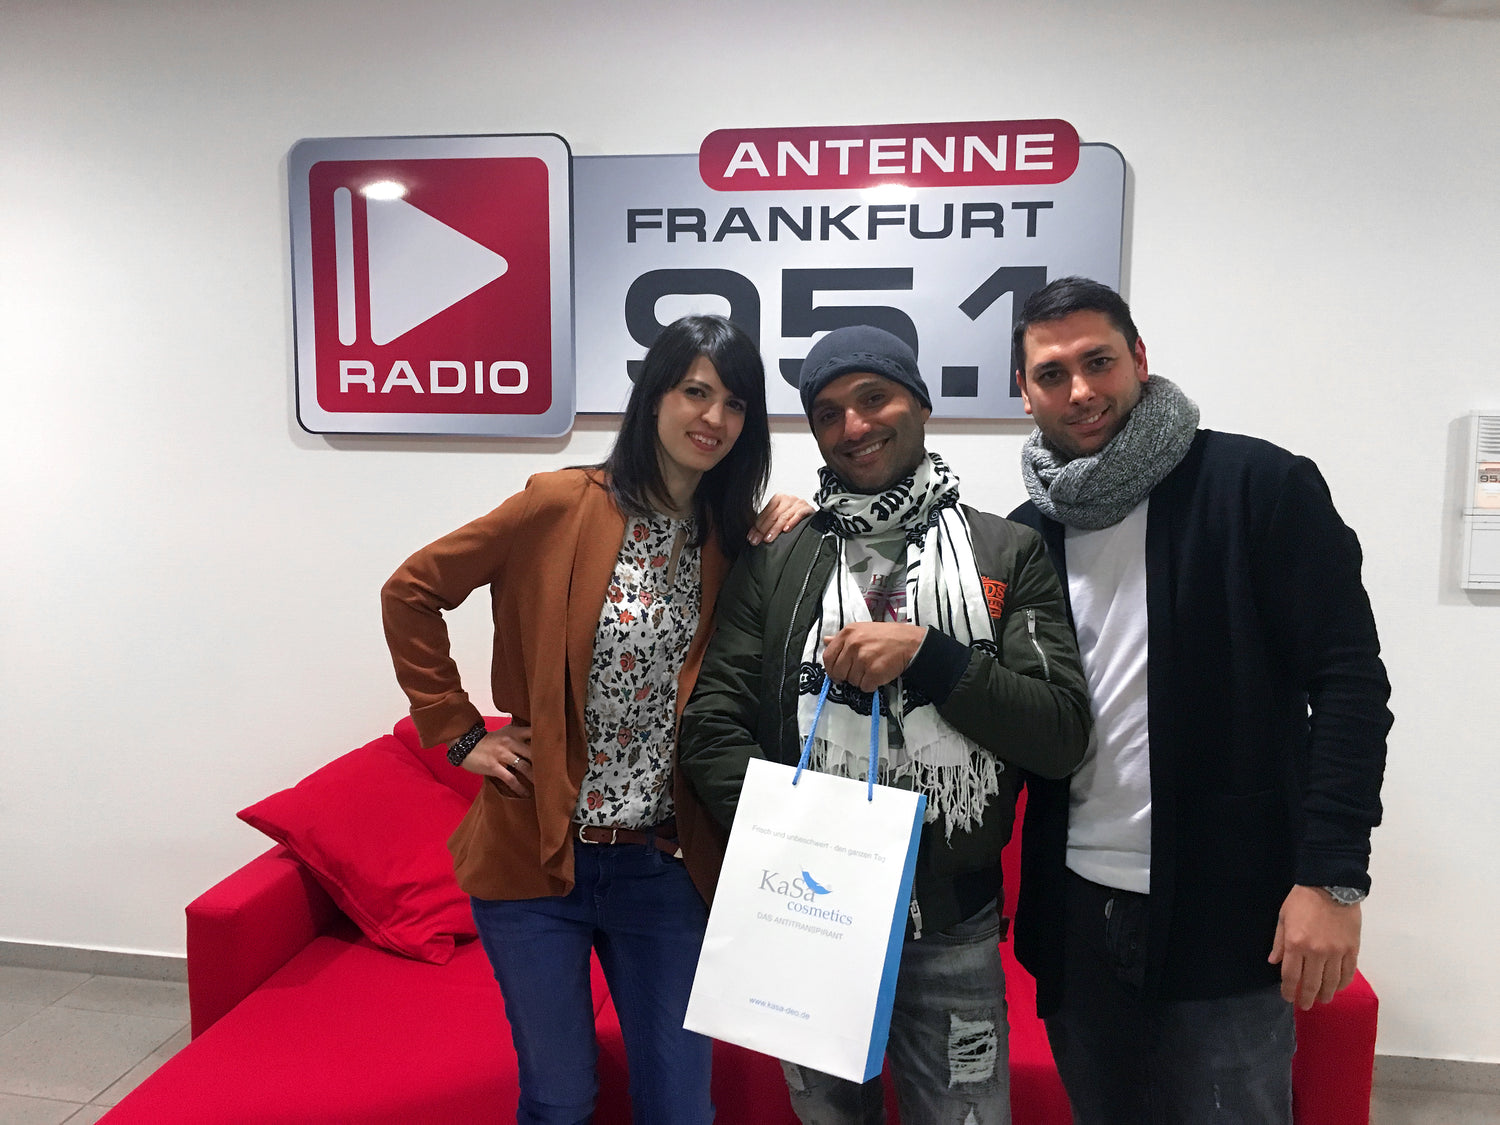 Zu Gast bei Antenne Frankfurt 95.1